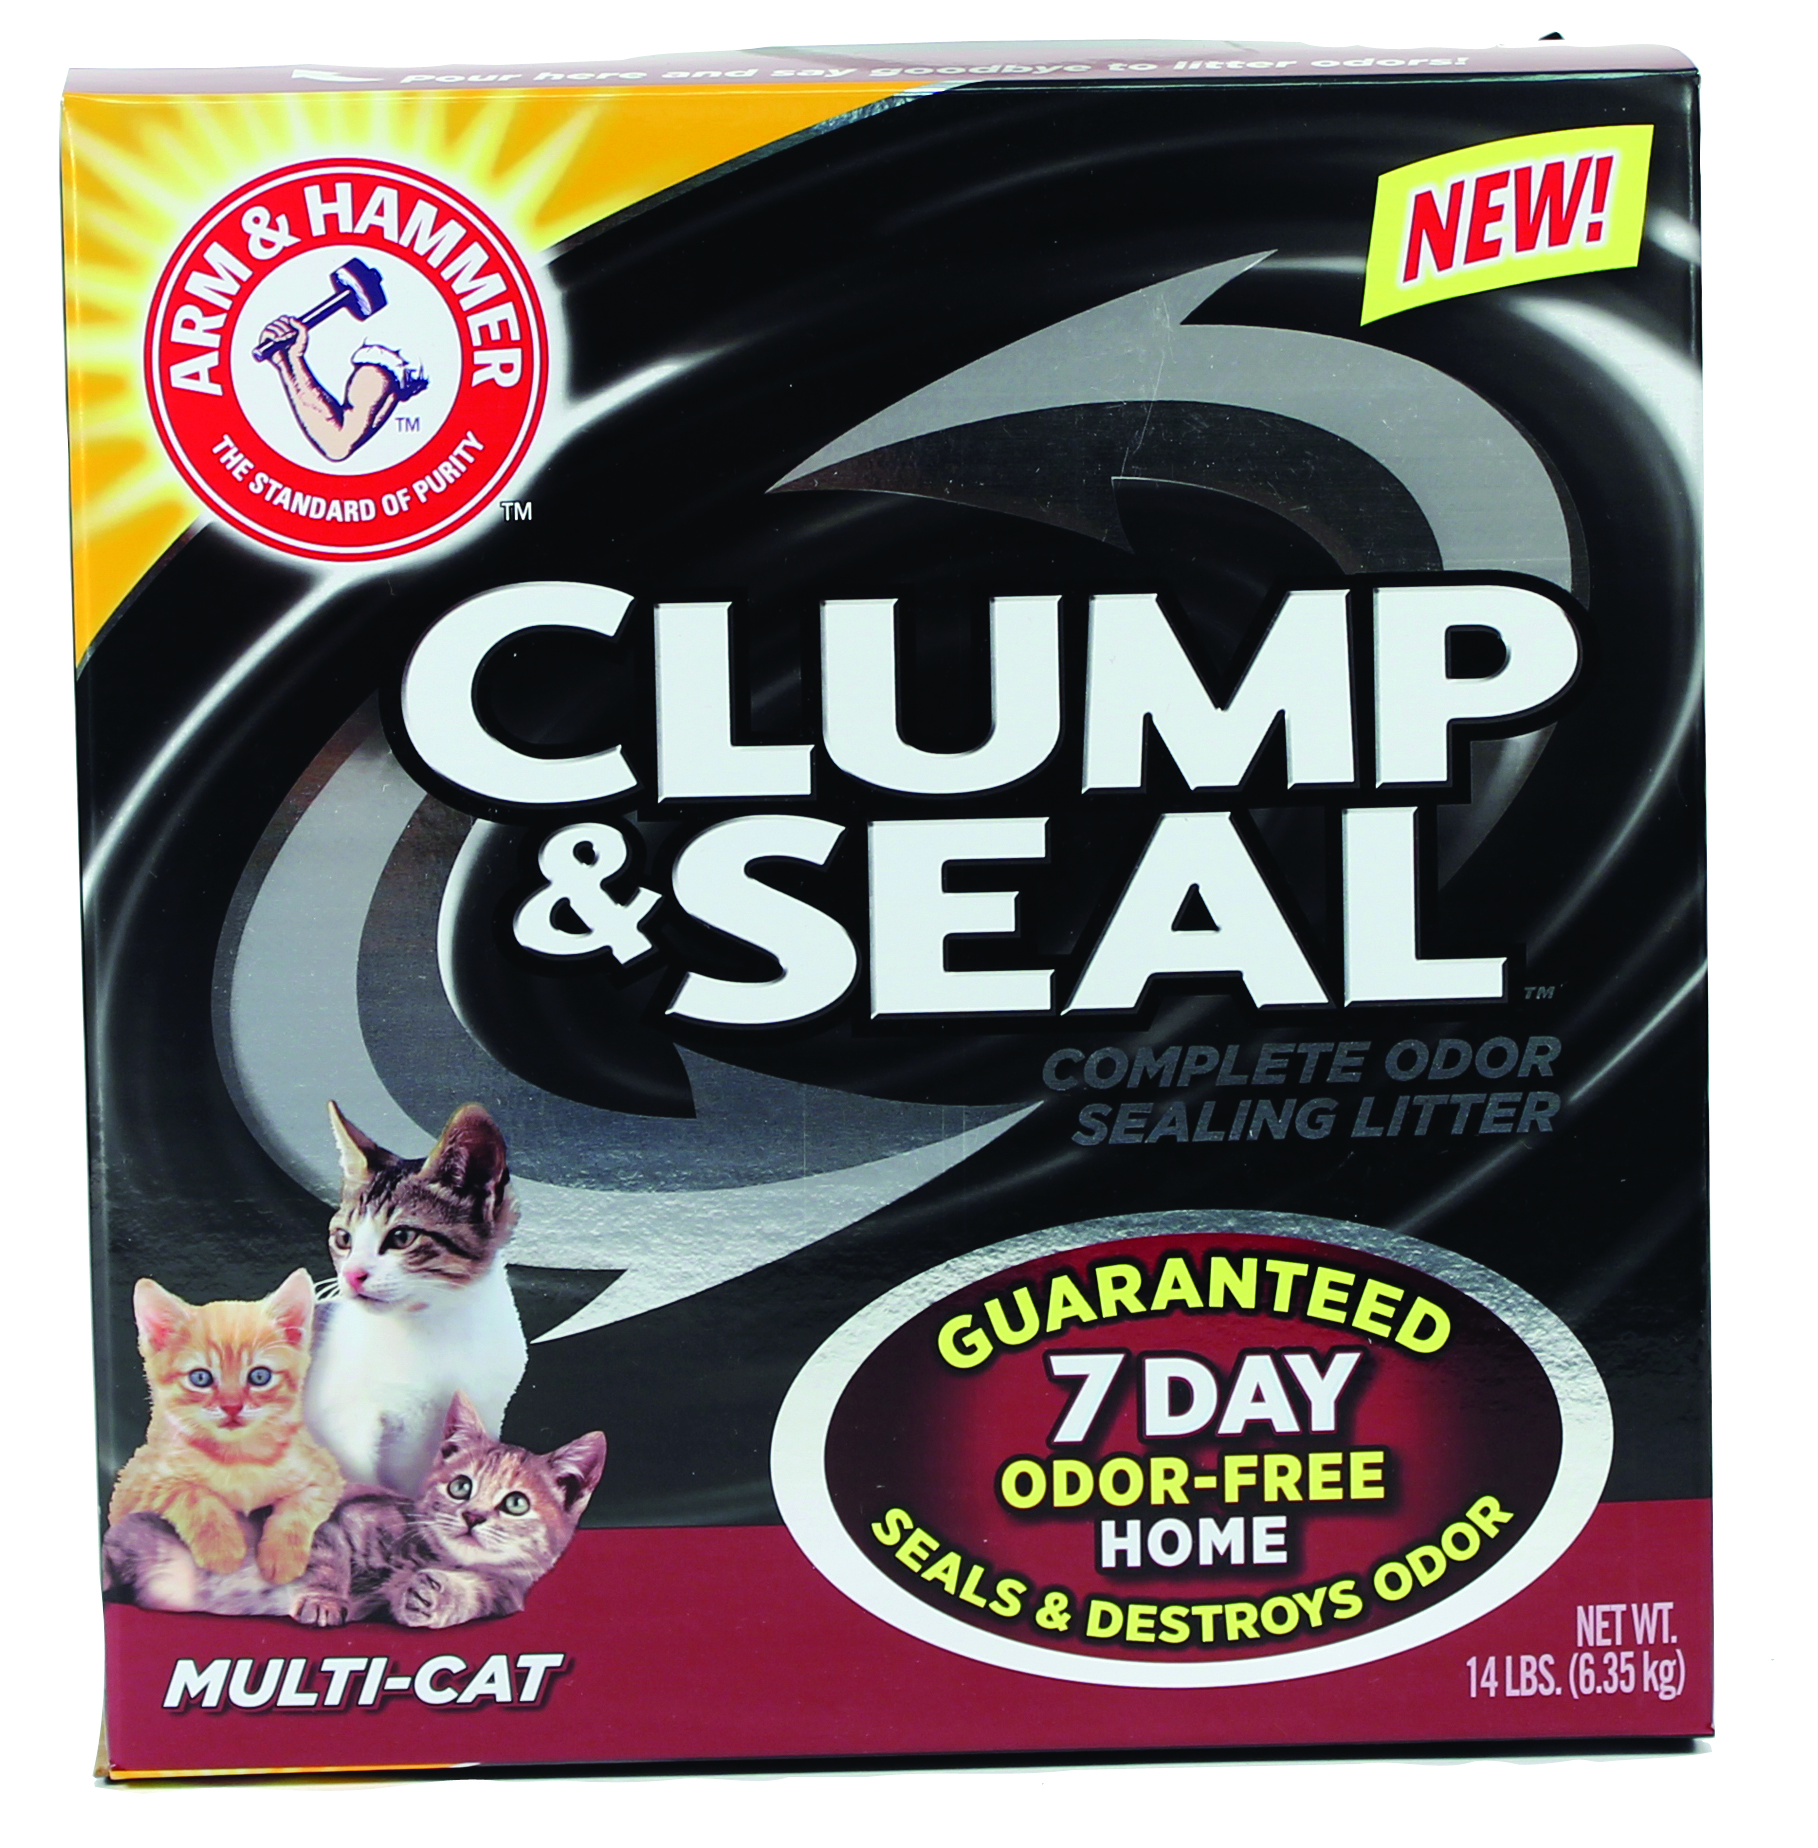 CLUMP & SEAL MULTI-CAT LITTER